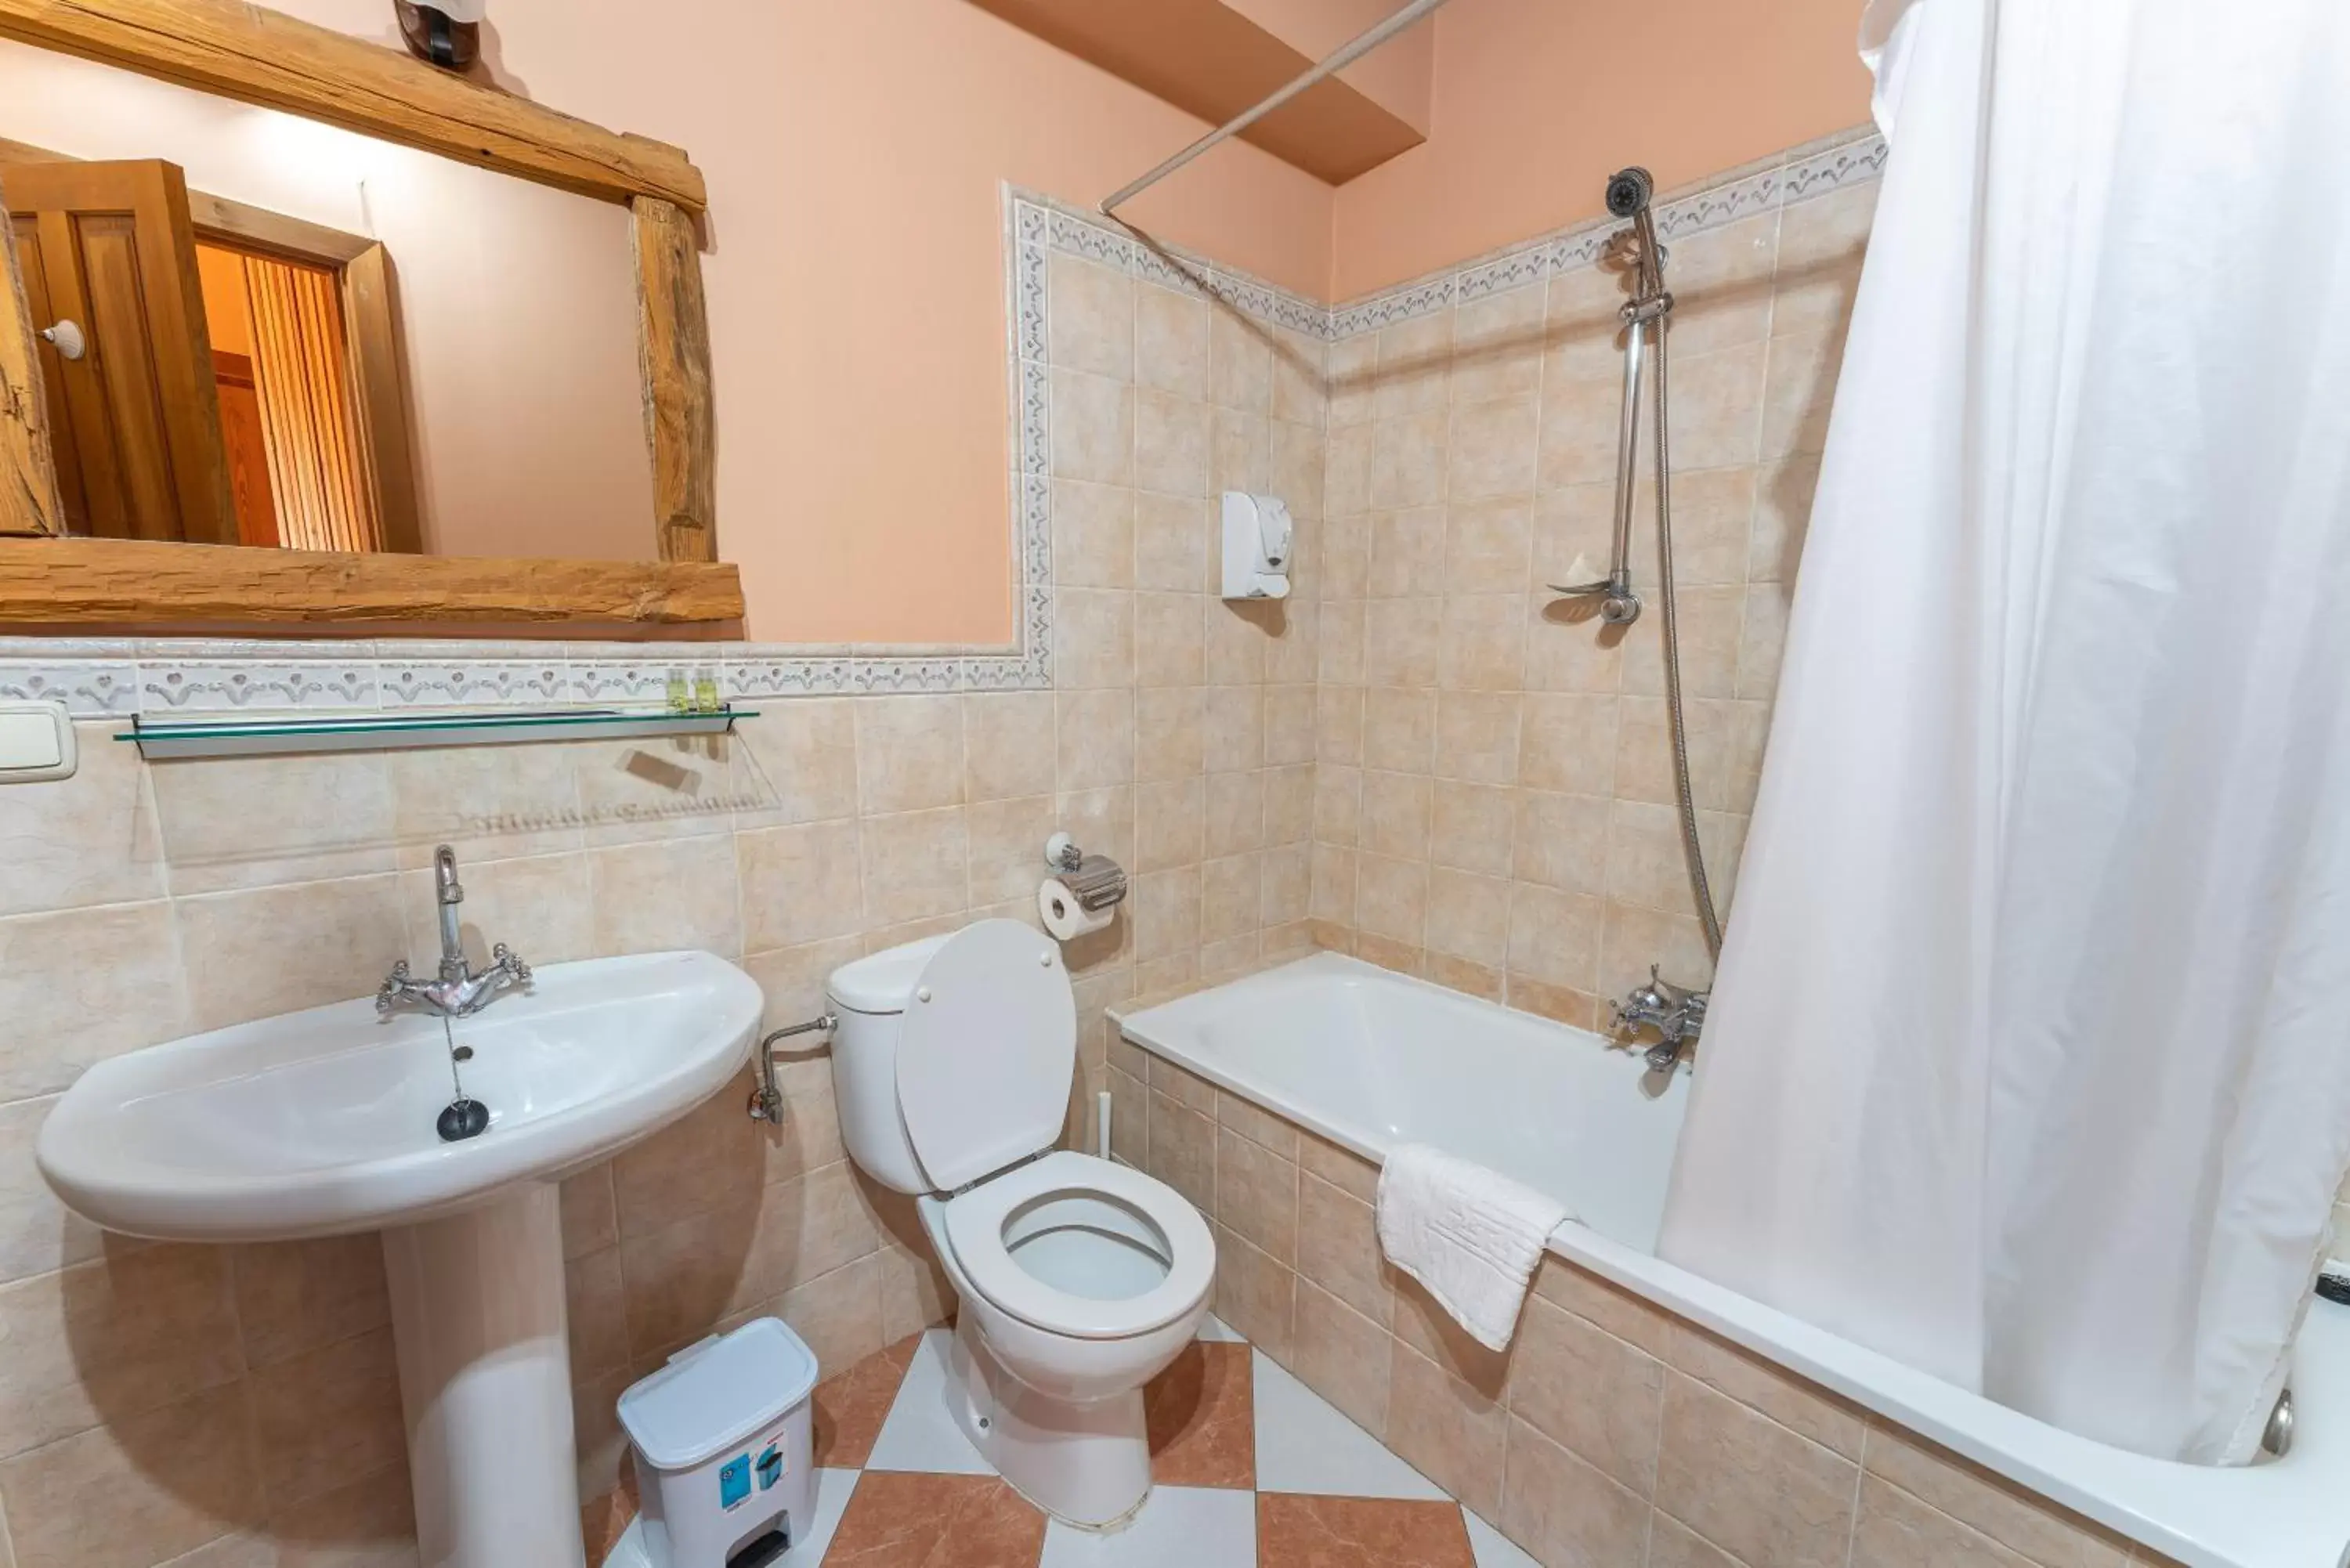 Bathroom in Hotel Rincón Castellano